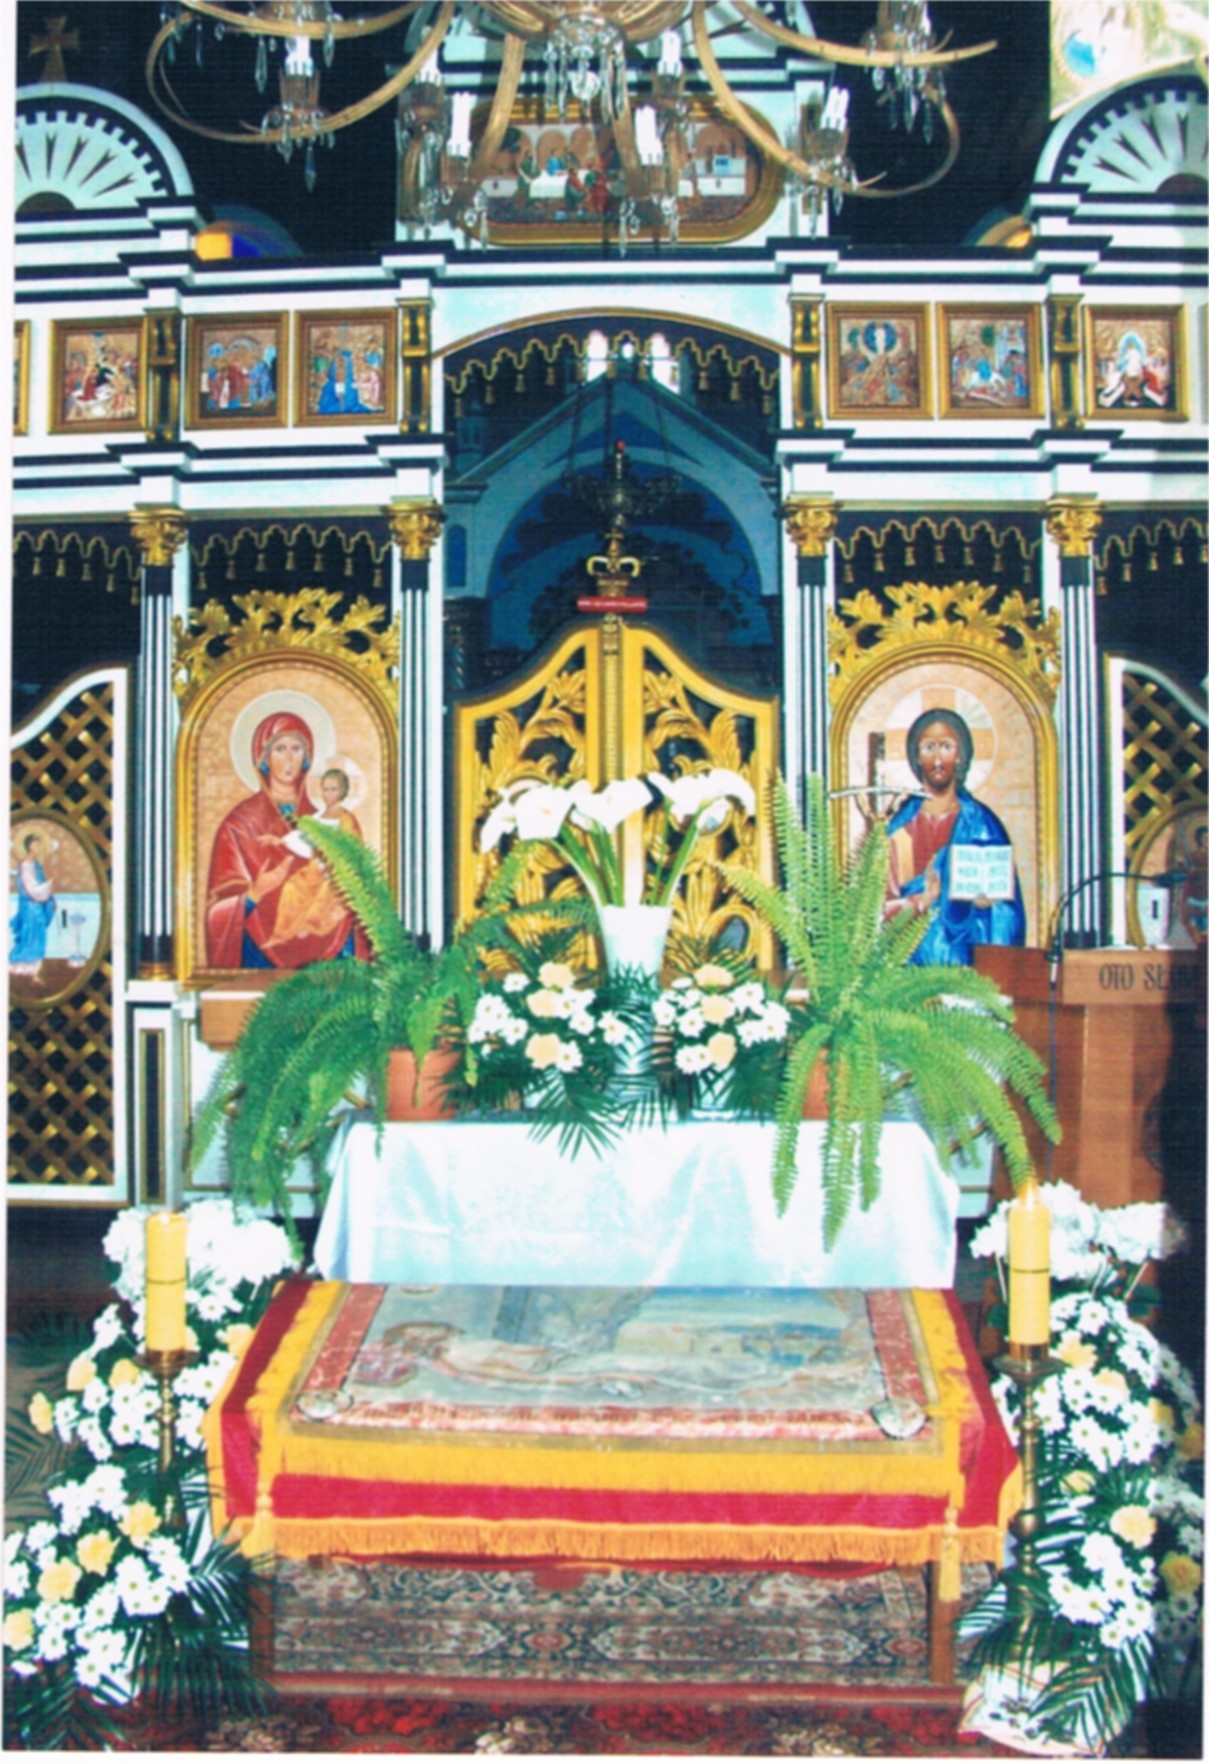 Płaszczenica wystawiona do adoracji w cerkwi - wokół płaszczenicy kwiaty i obrazy świętych